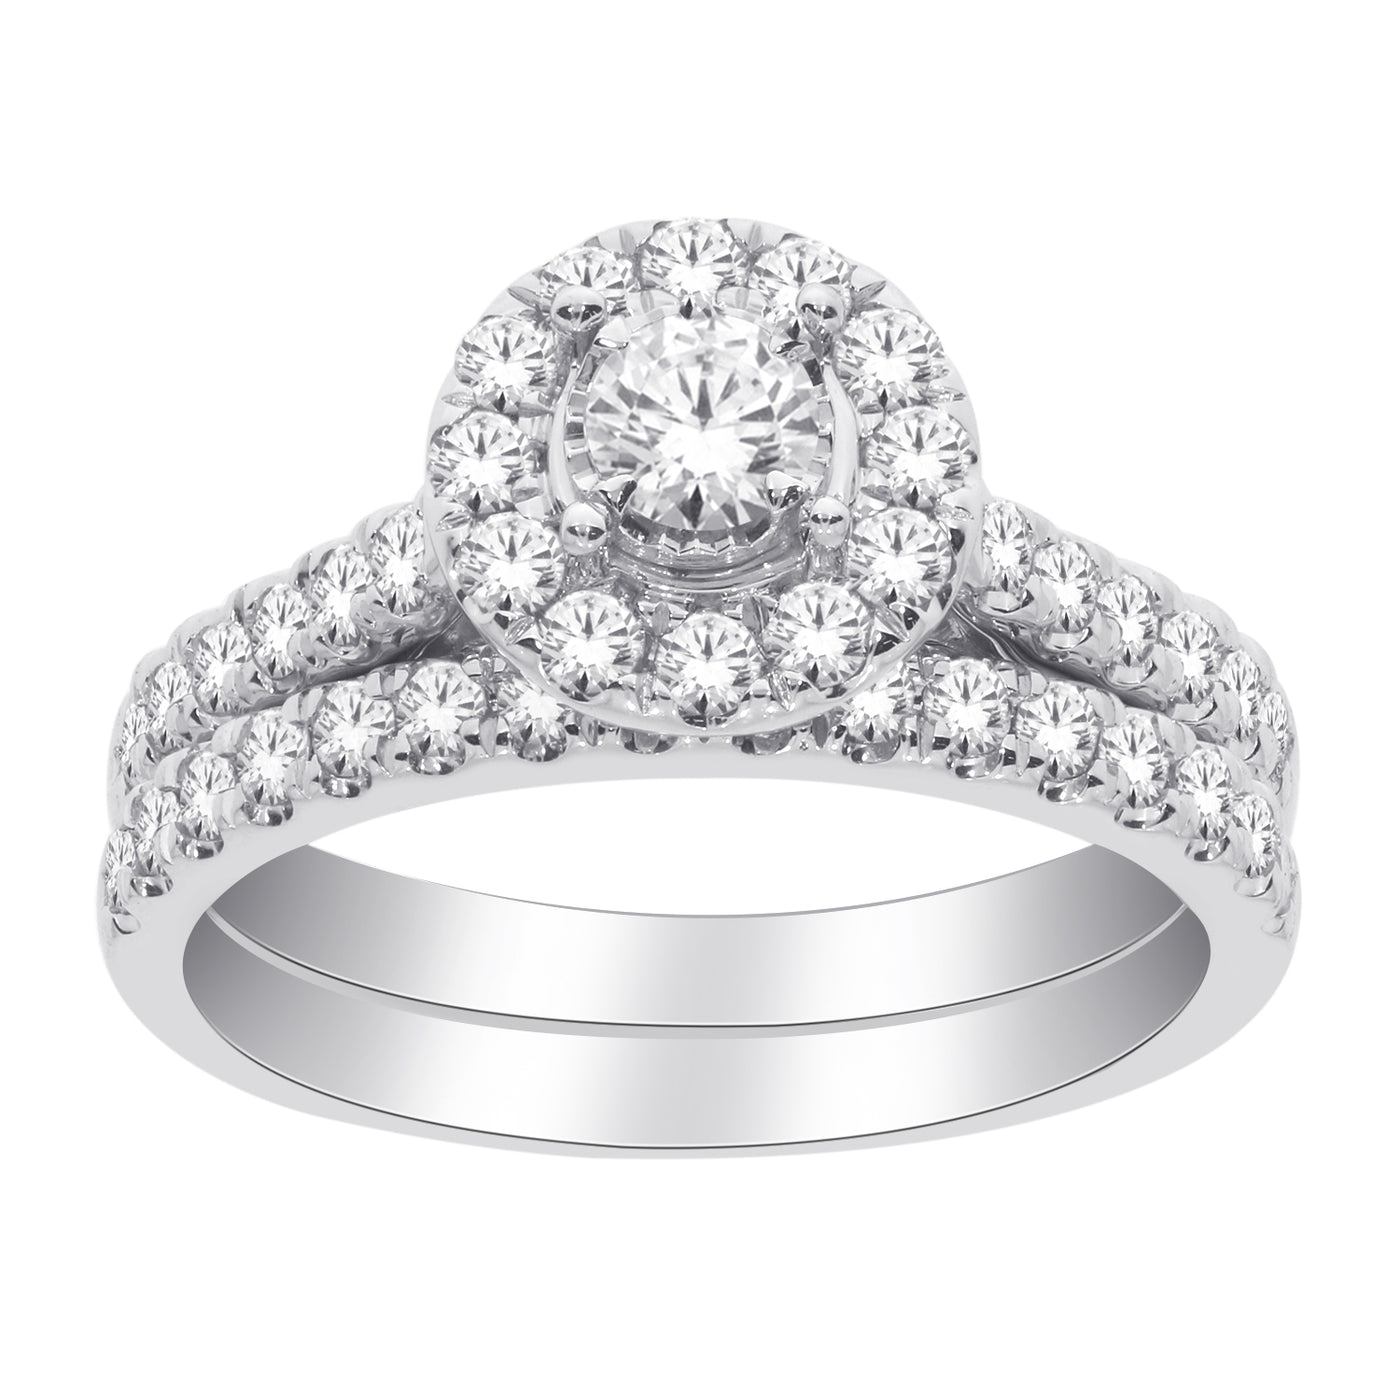 White Gold Halo Diamond Engagement And Wedding Ring Set